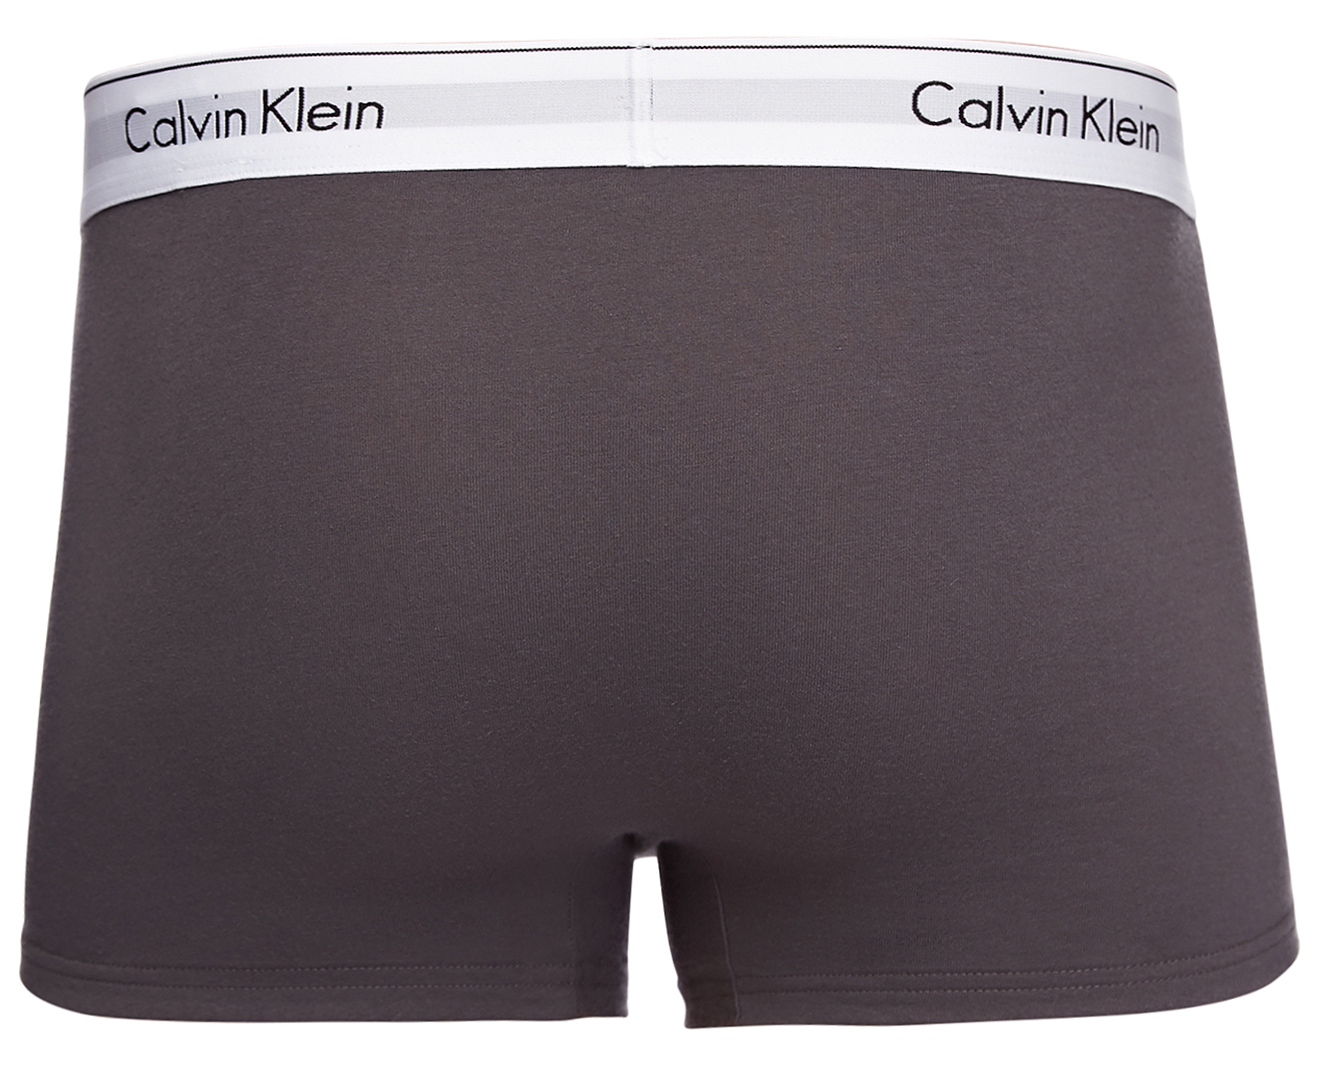 Calvin Klein Men's Modern Cotton Stretch Trunks 2-Pack - Pink/Grey ...